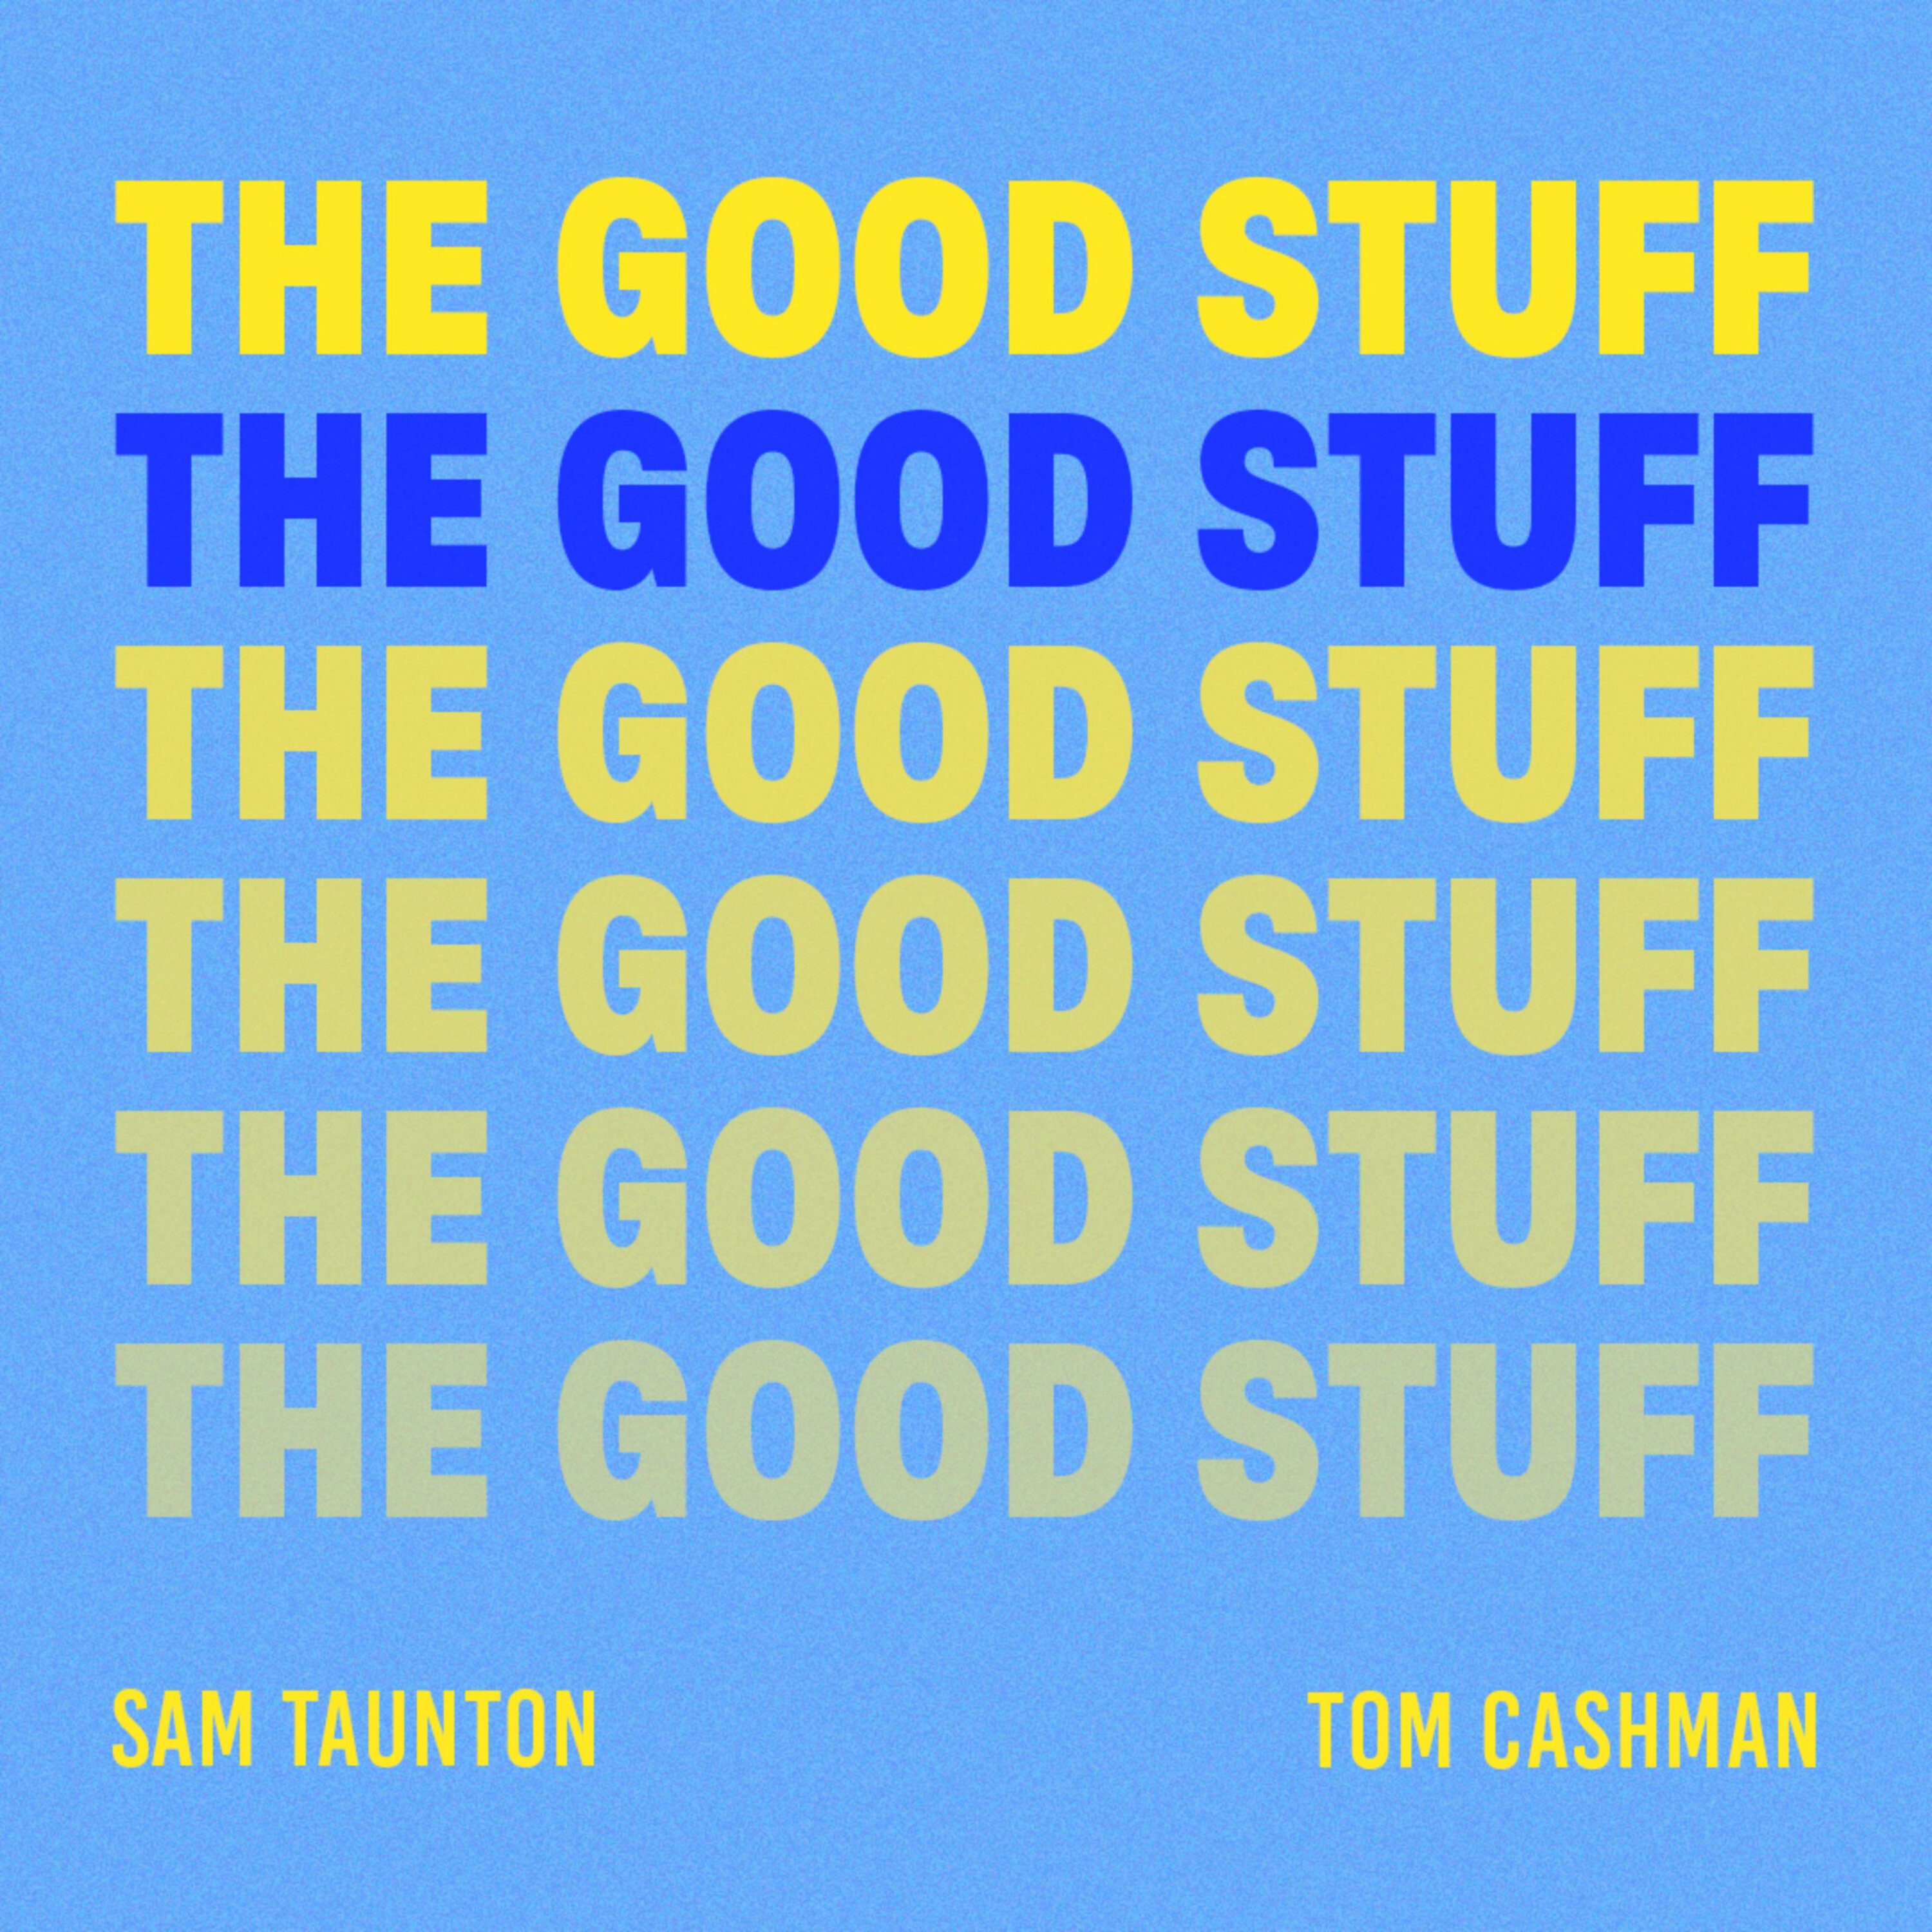 The Good Stuff - Episode 26 Feat. Cameron Duggan